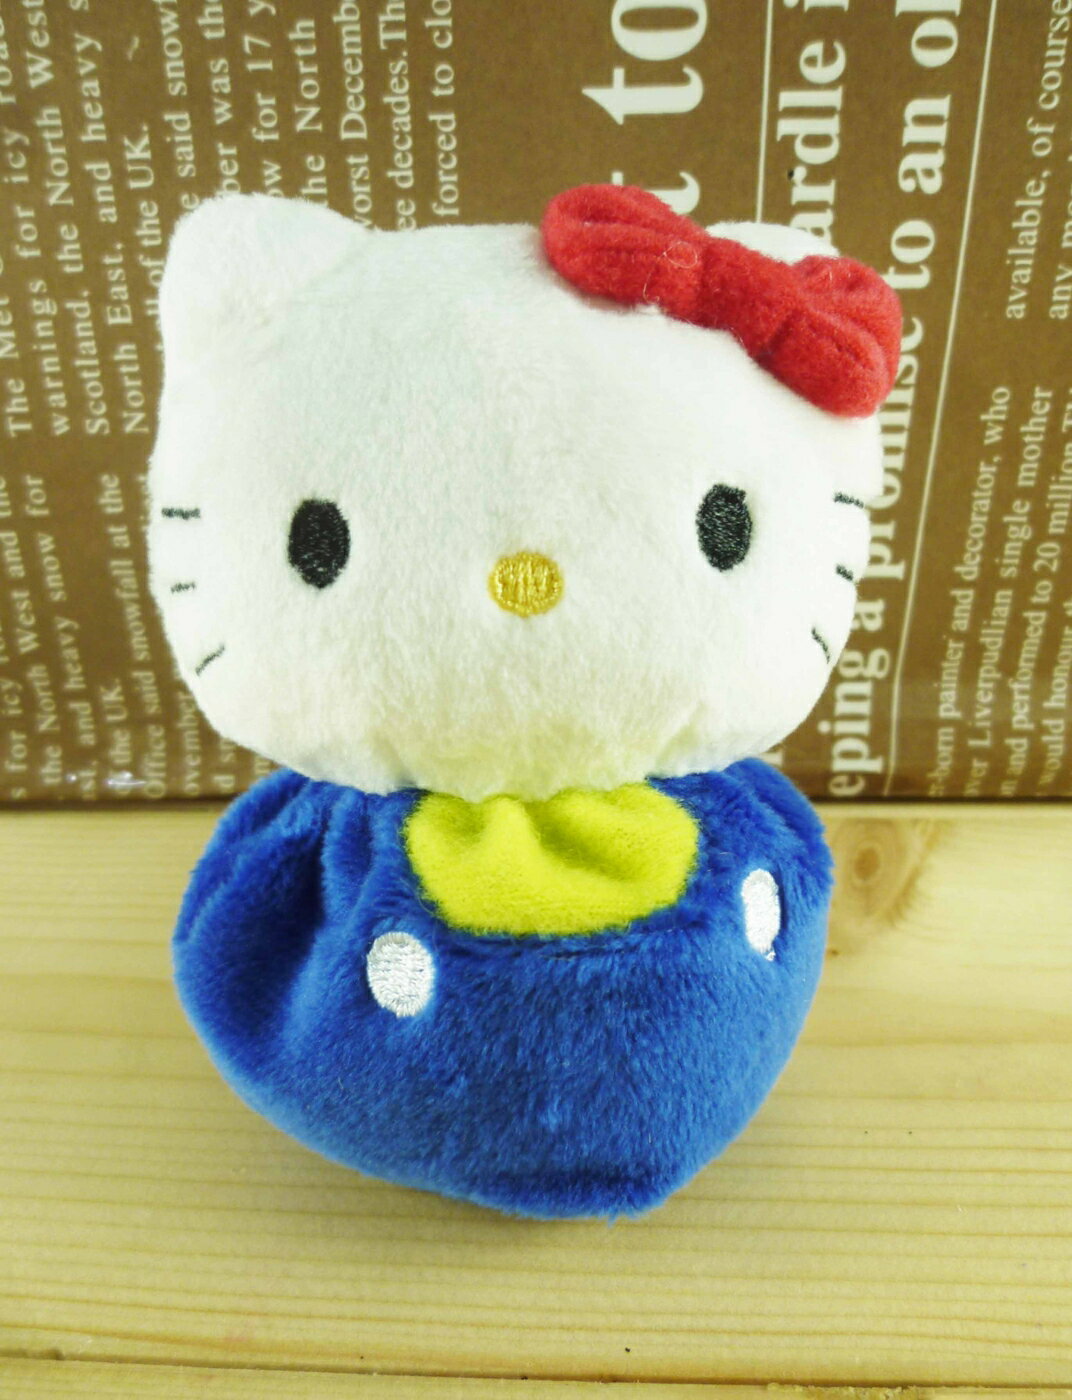 【震撼精品百貨】Hello Kitty 凱蒂貓 絨毛玩偶/擺飾-豆豆藍 震撼日式精品百貨